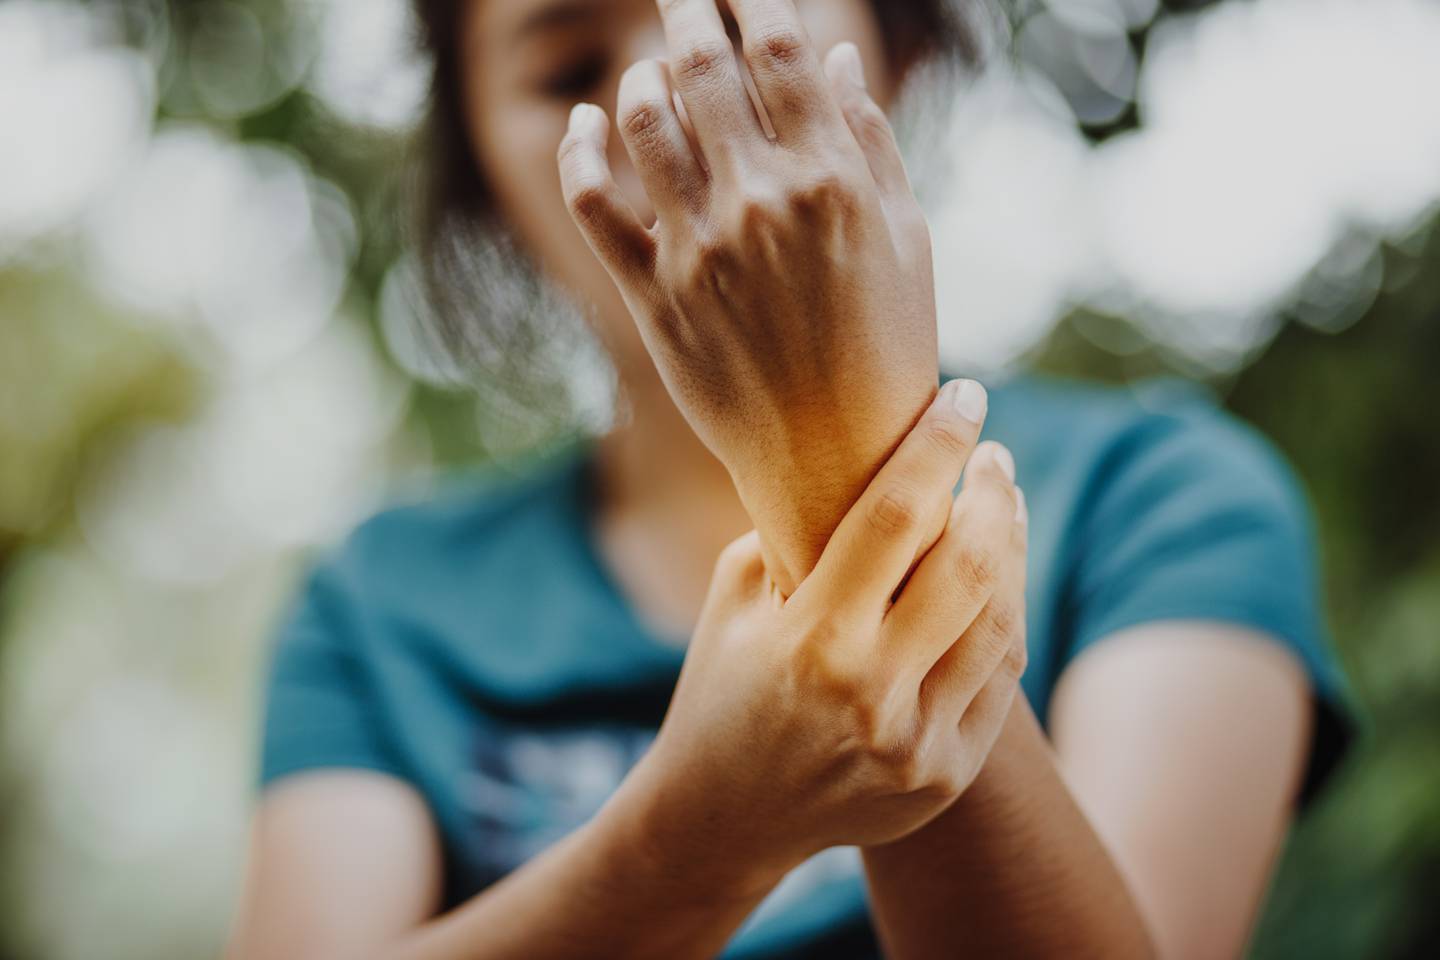 Dolor en las muñecas por artritis son un ejemplo de dolor crónico.

Fotografía: Shutterstock